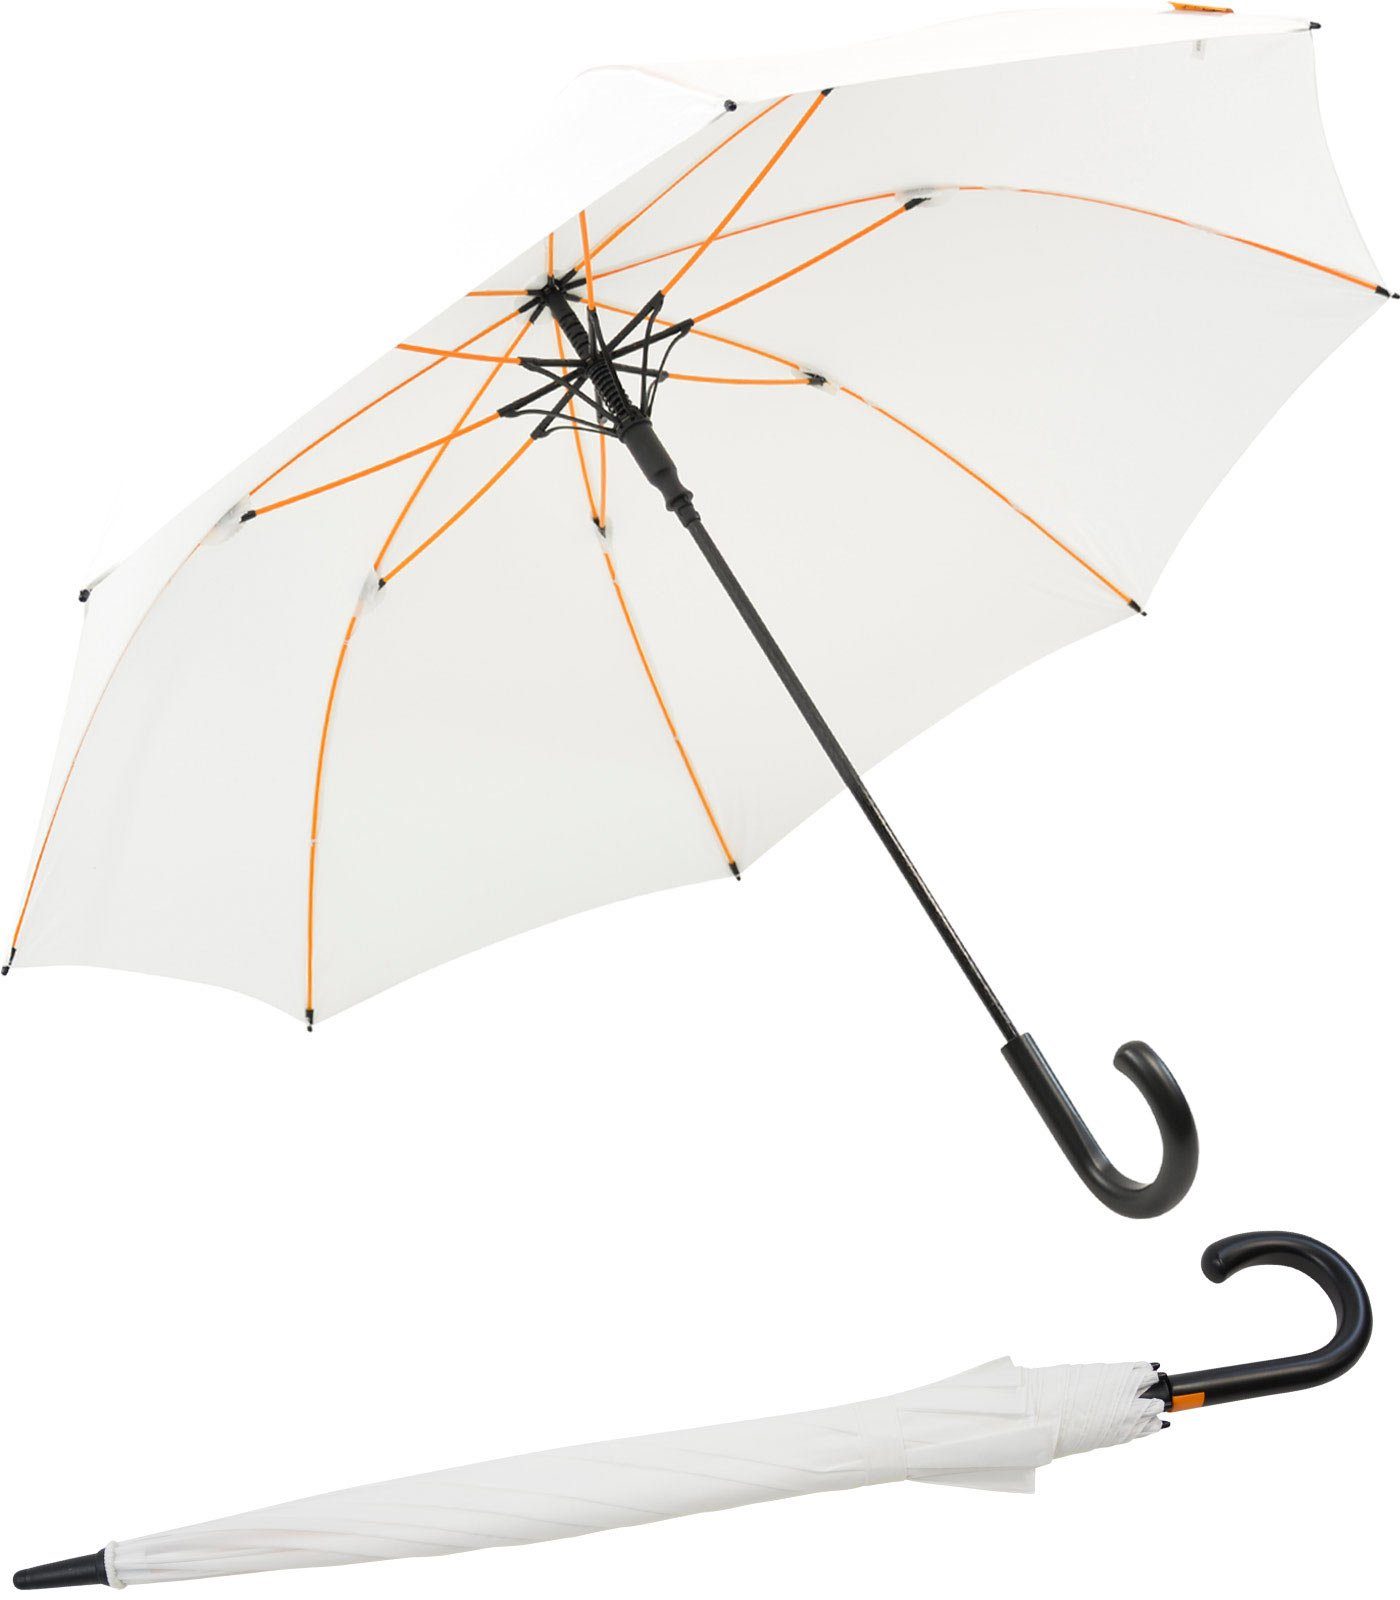 Impliva Langregenschirm Falcone® luxuriöser XXL Automatikschirm Rundgriff, mit farbigen Streben, groß, leicht, für zwei Personen geeignet